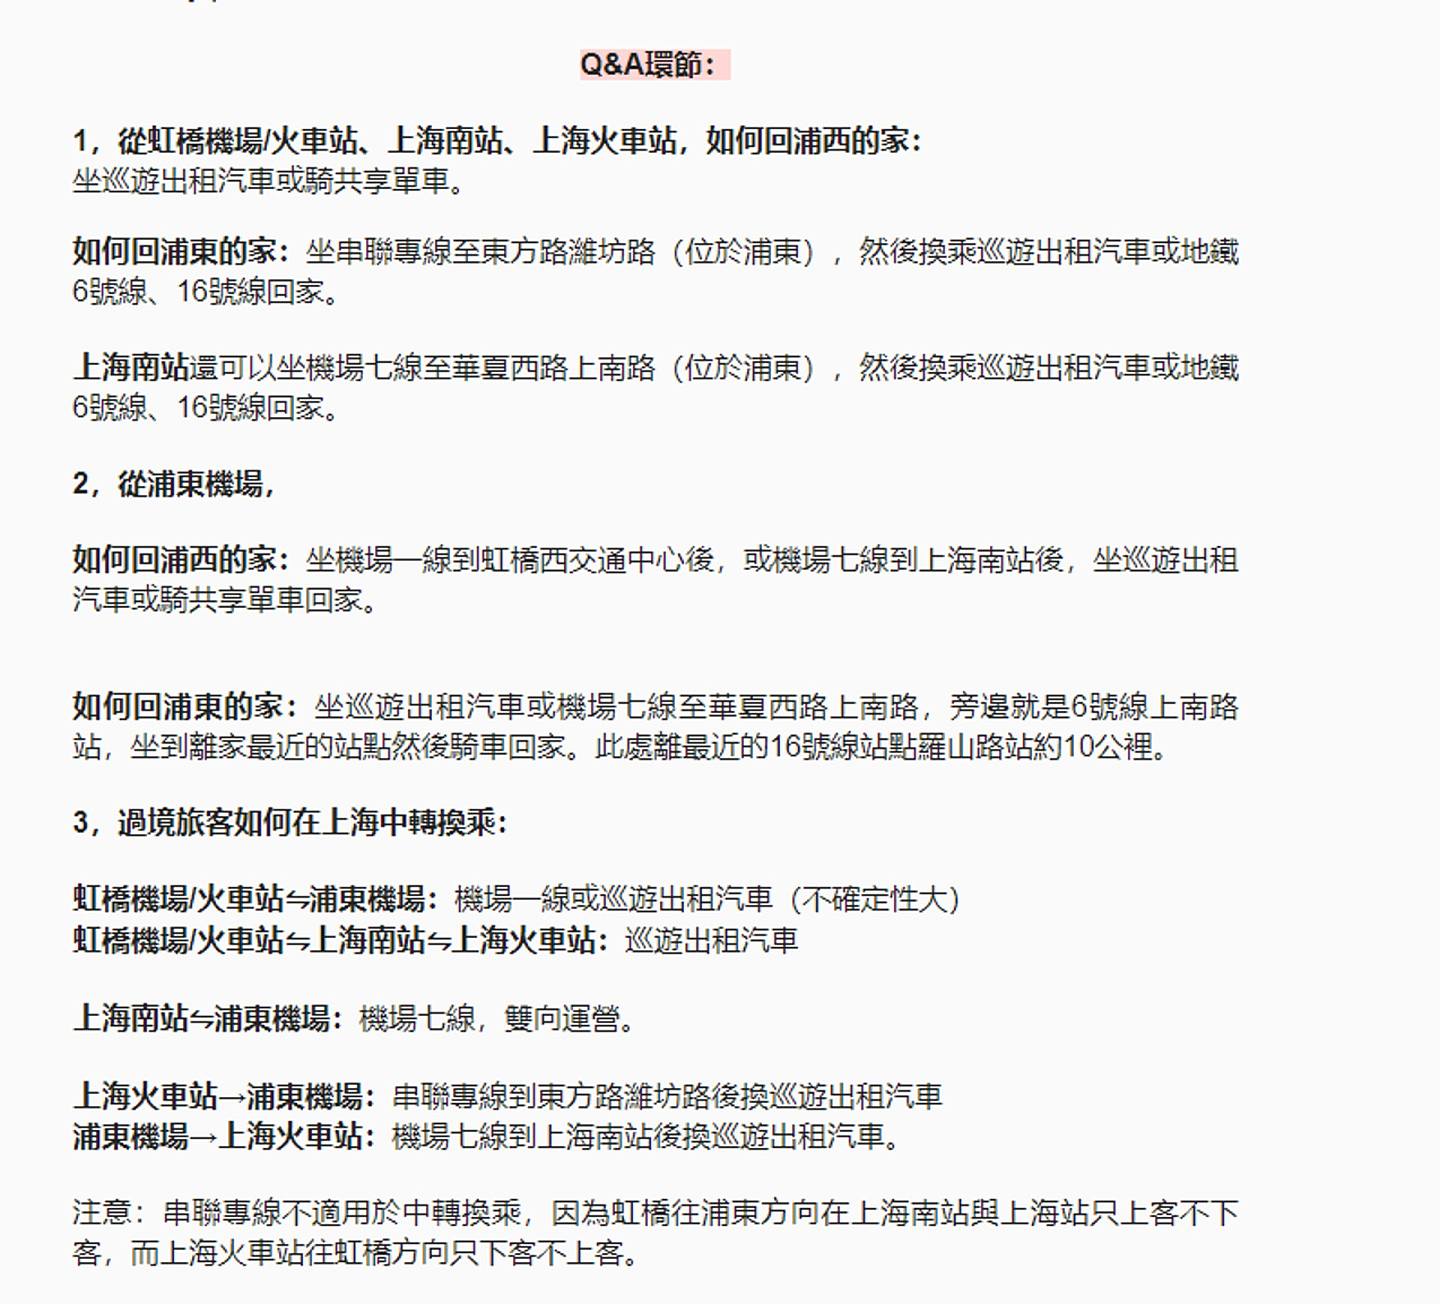 该指南也解答网民关于出行的疑问，在官方电话打不通的情况下，提供上海市民有用资讯。 （微信公众号＠上海文艺青年）